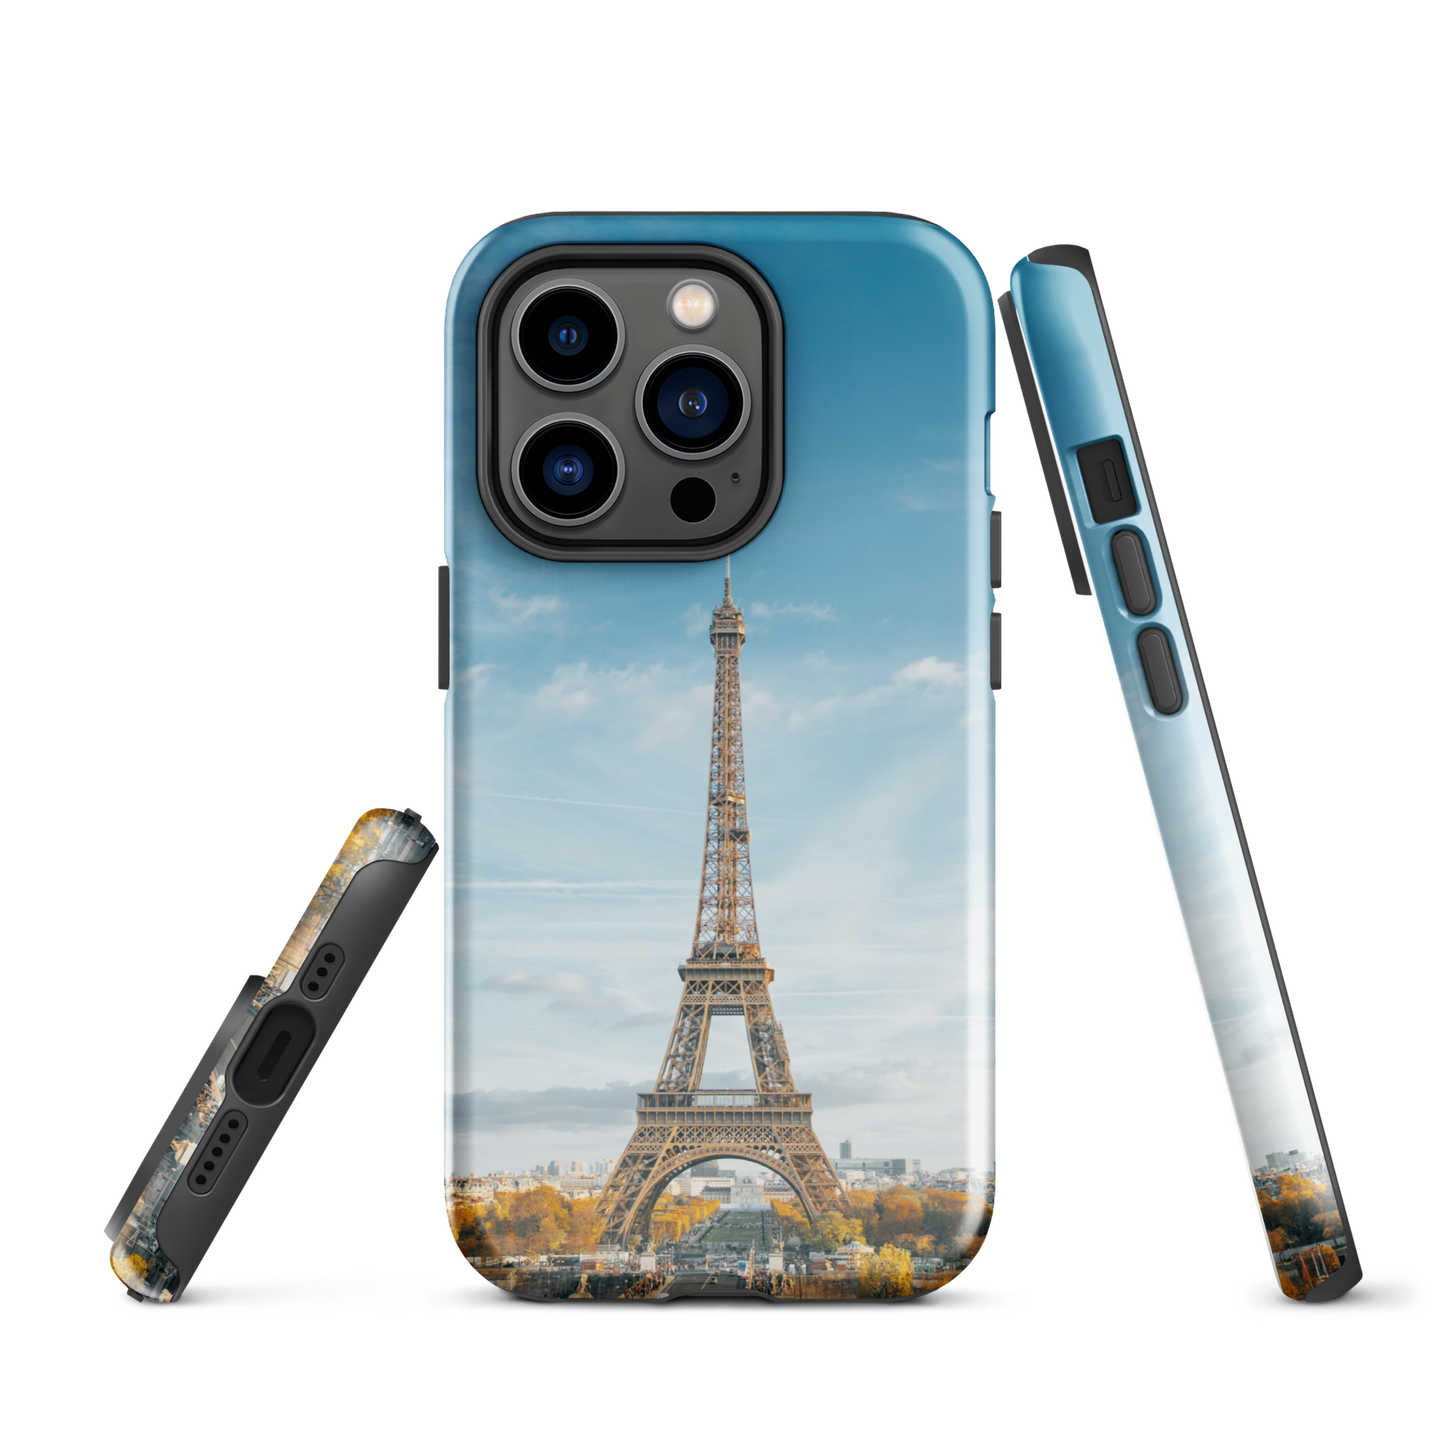 Coque rigide inspirée de la Tour Eiffel Paris : une protection élégante pour votre iPhone®